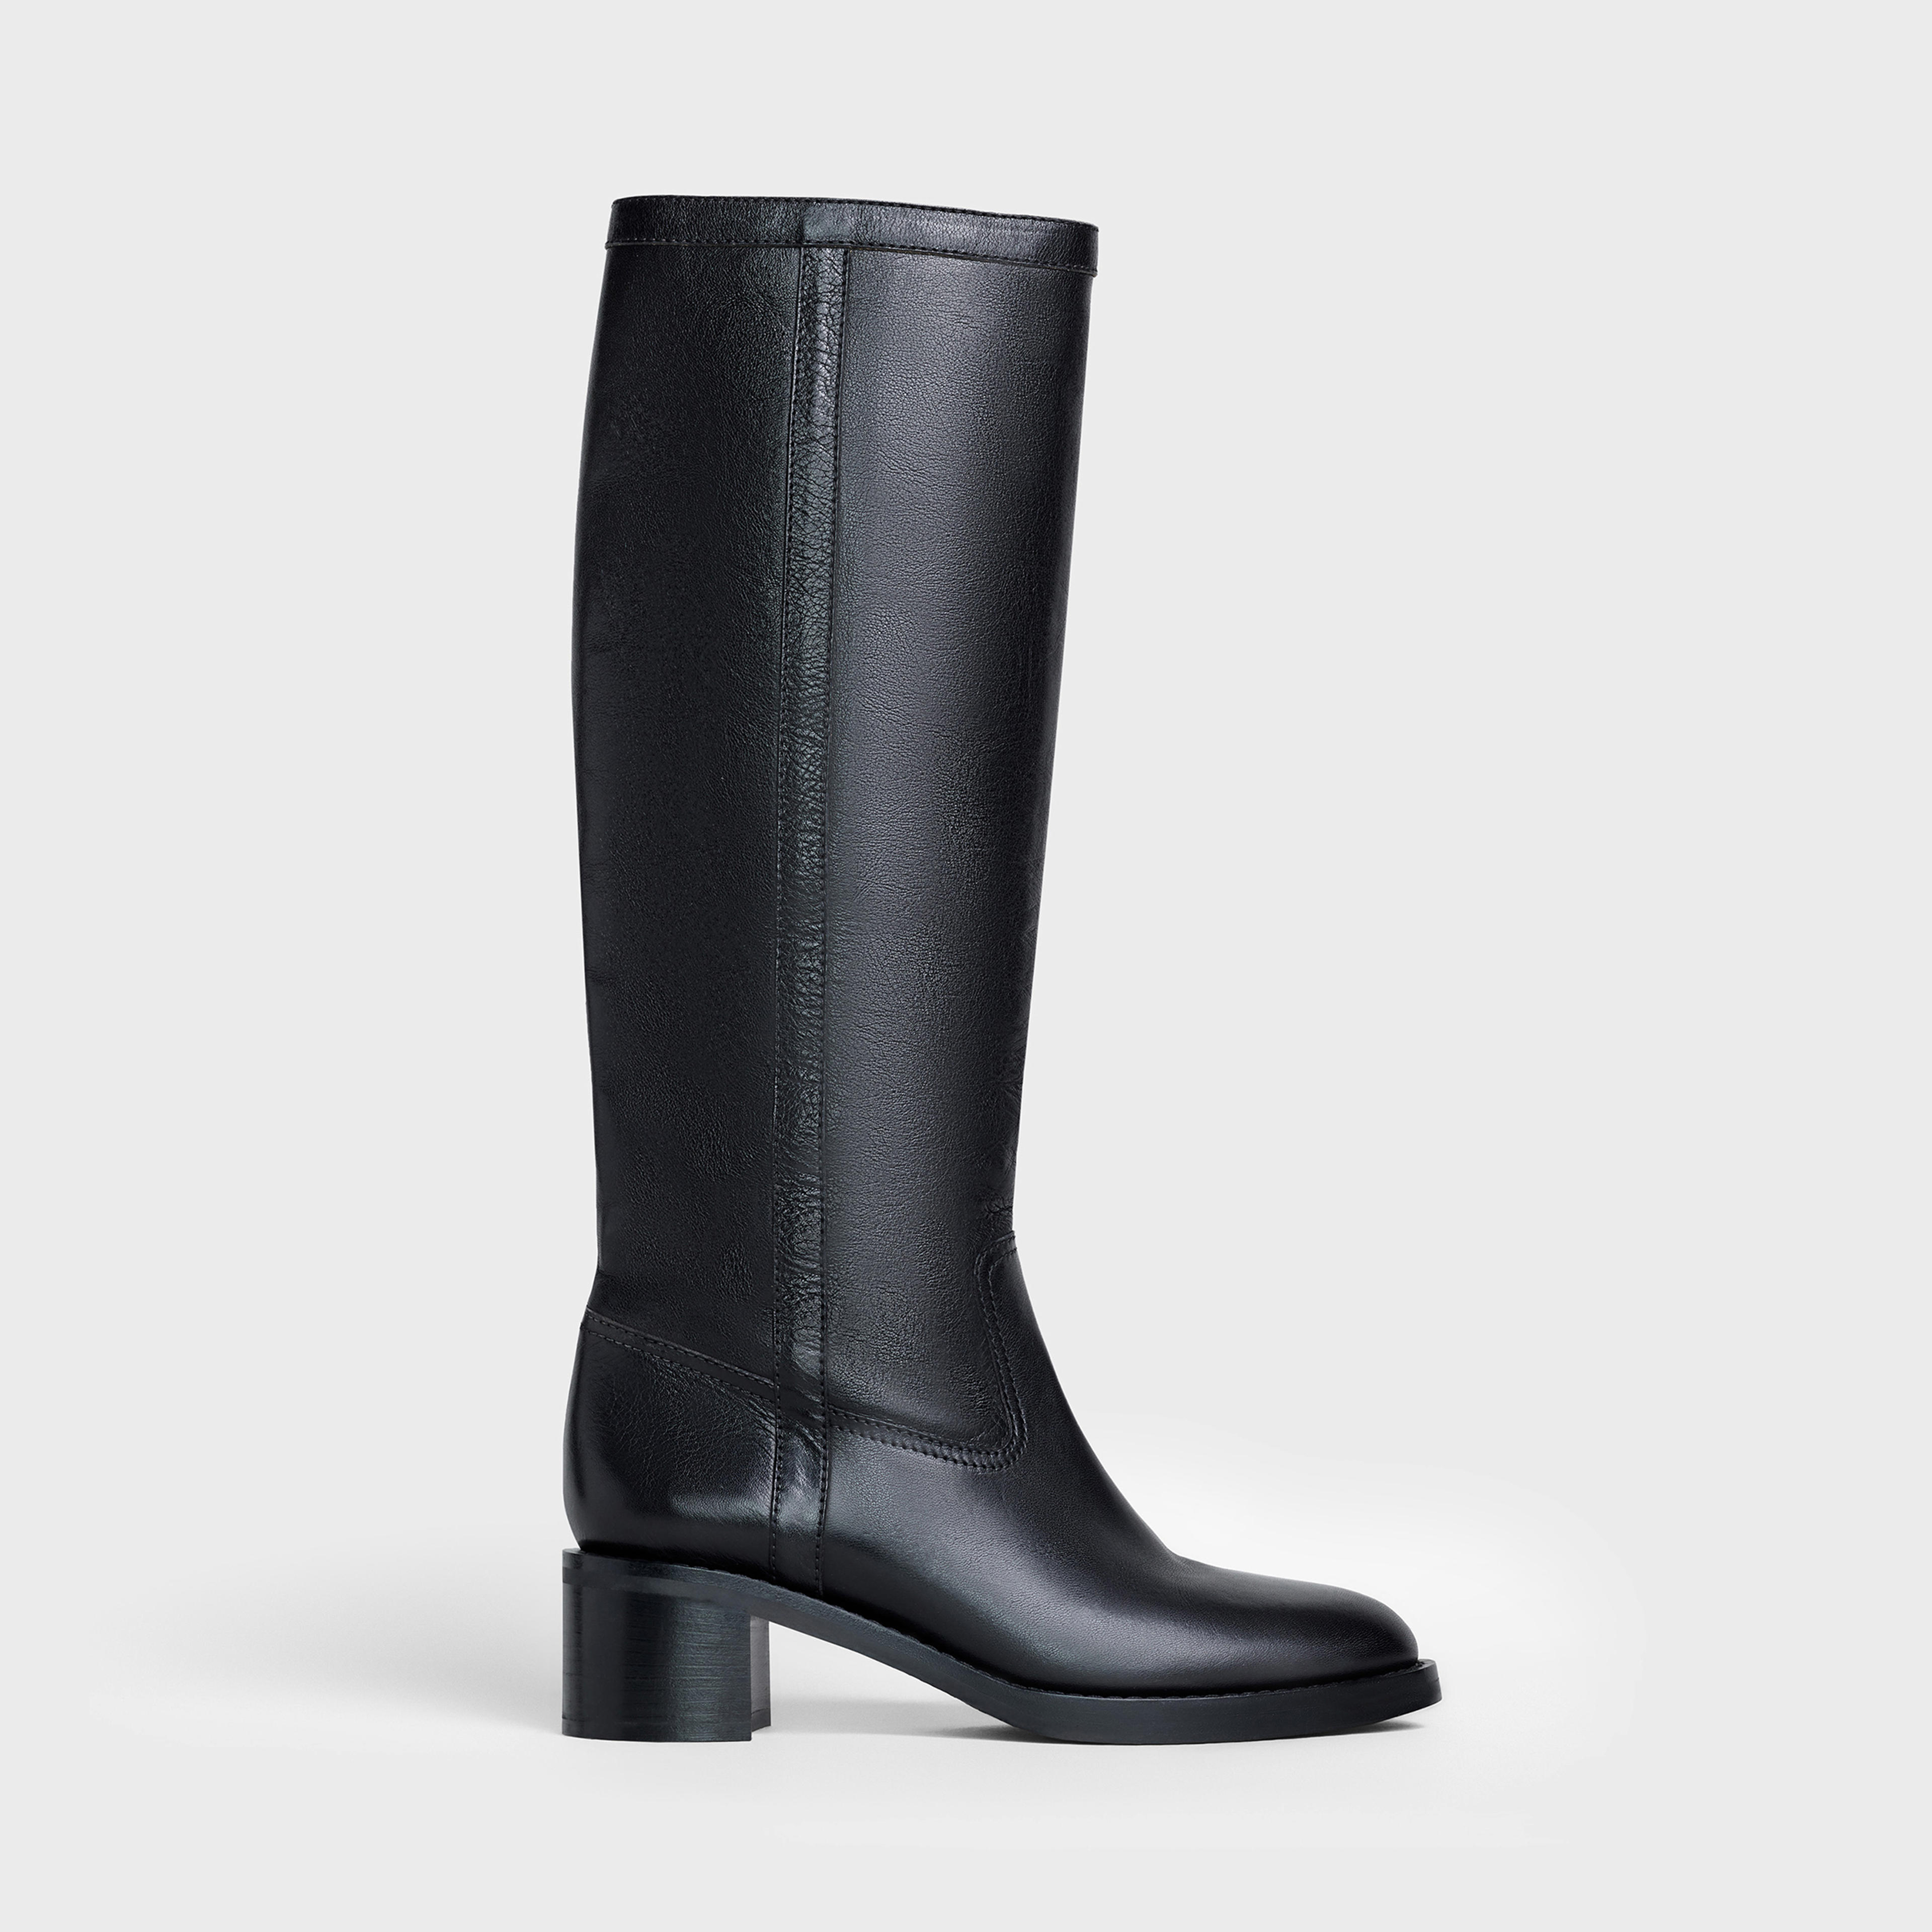 Celine folco boot in Calfskin - Black | CELINE